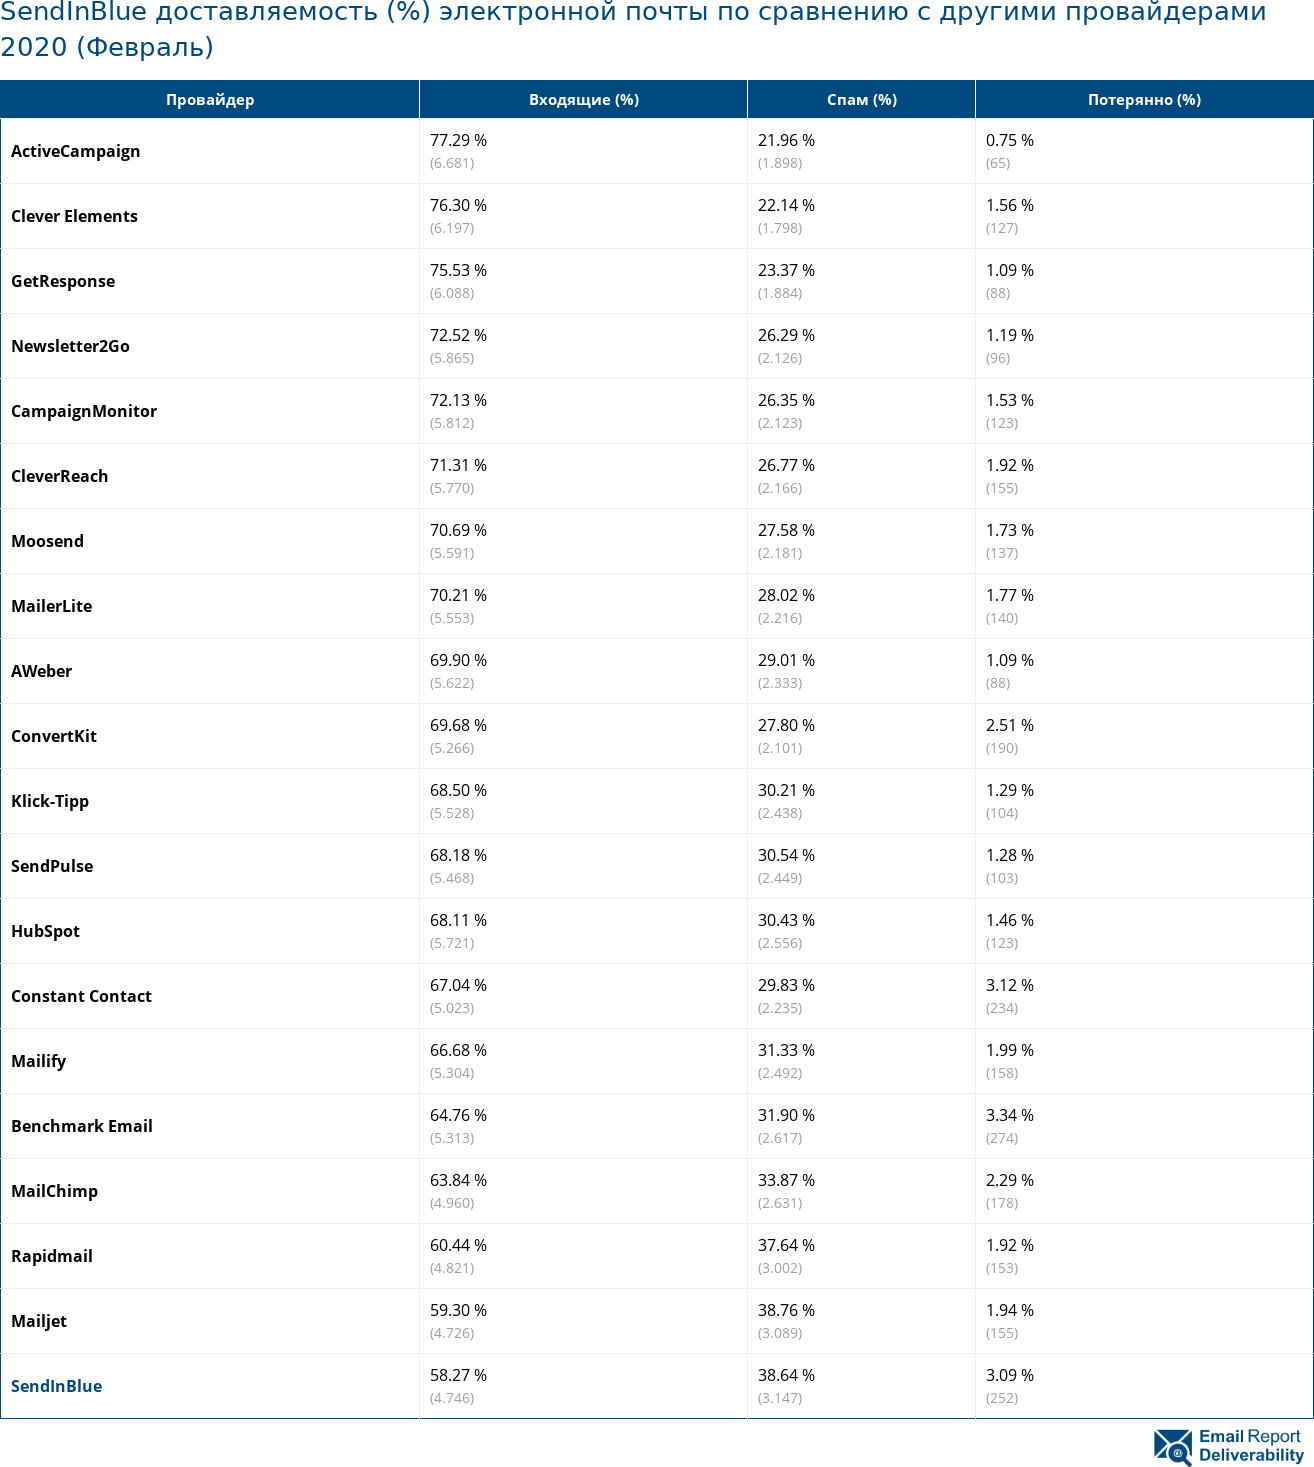 SendInBlue доставляемость (%) электронной почты по сравнению с другими провайдерами 2020 (Февраль)